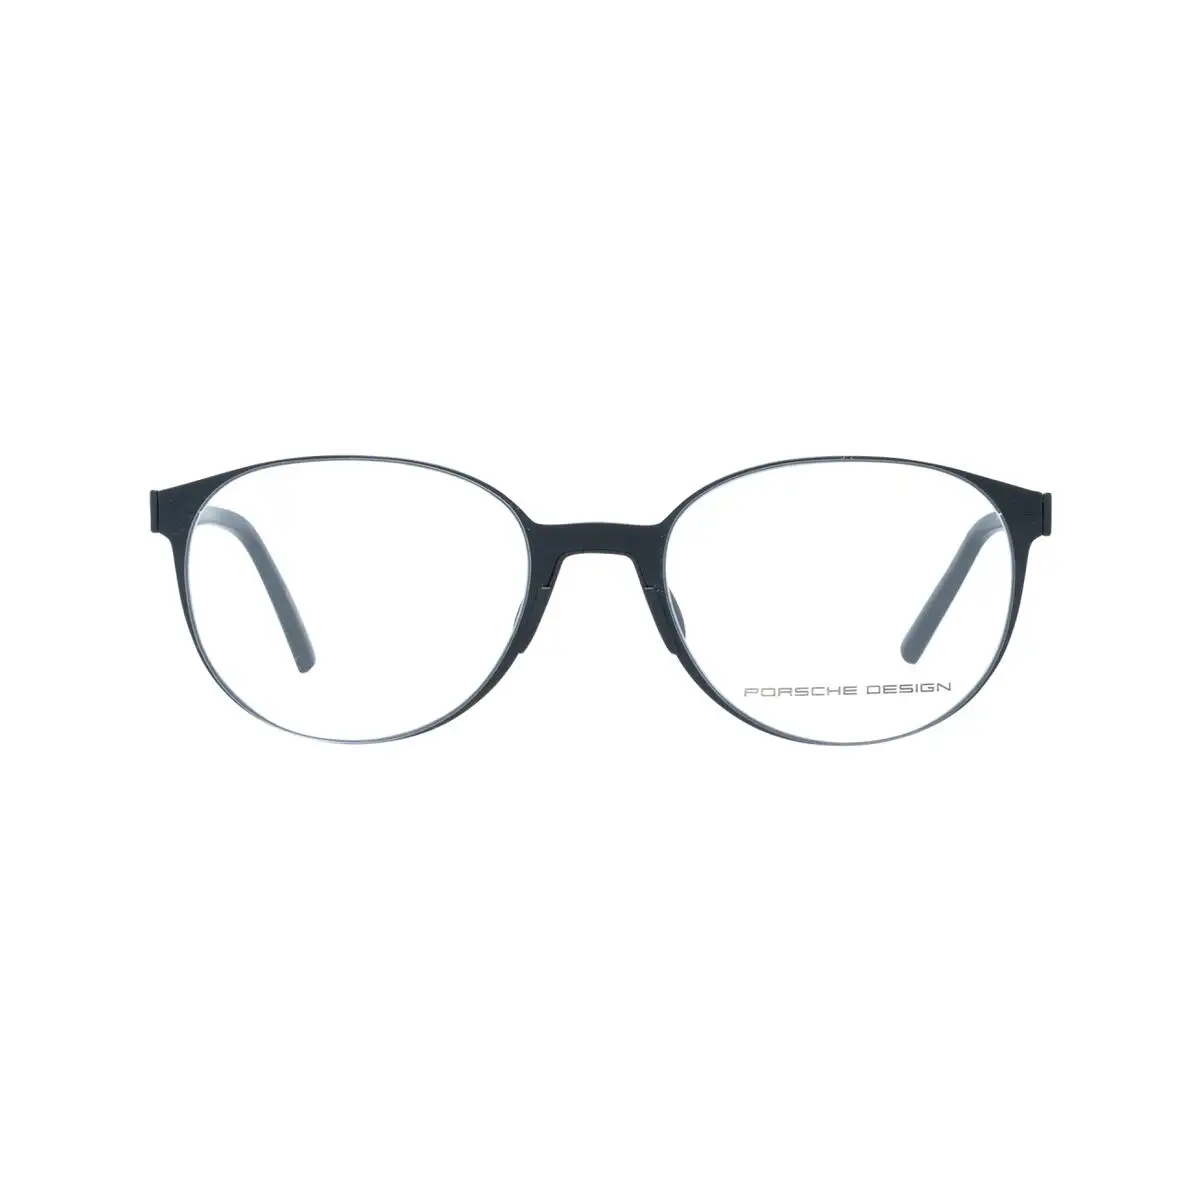 Monture de lunettes homme porsche design p8312 e noir_5892. DIAYTAR SENEGAL - Votre Destinée Shopping Personnalisée. Plongez dans notre boutique en ligne et créez votre propre expérience de shopping en choisissant parmi nos produits variés.